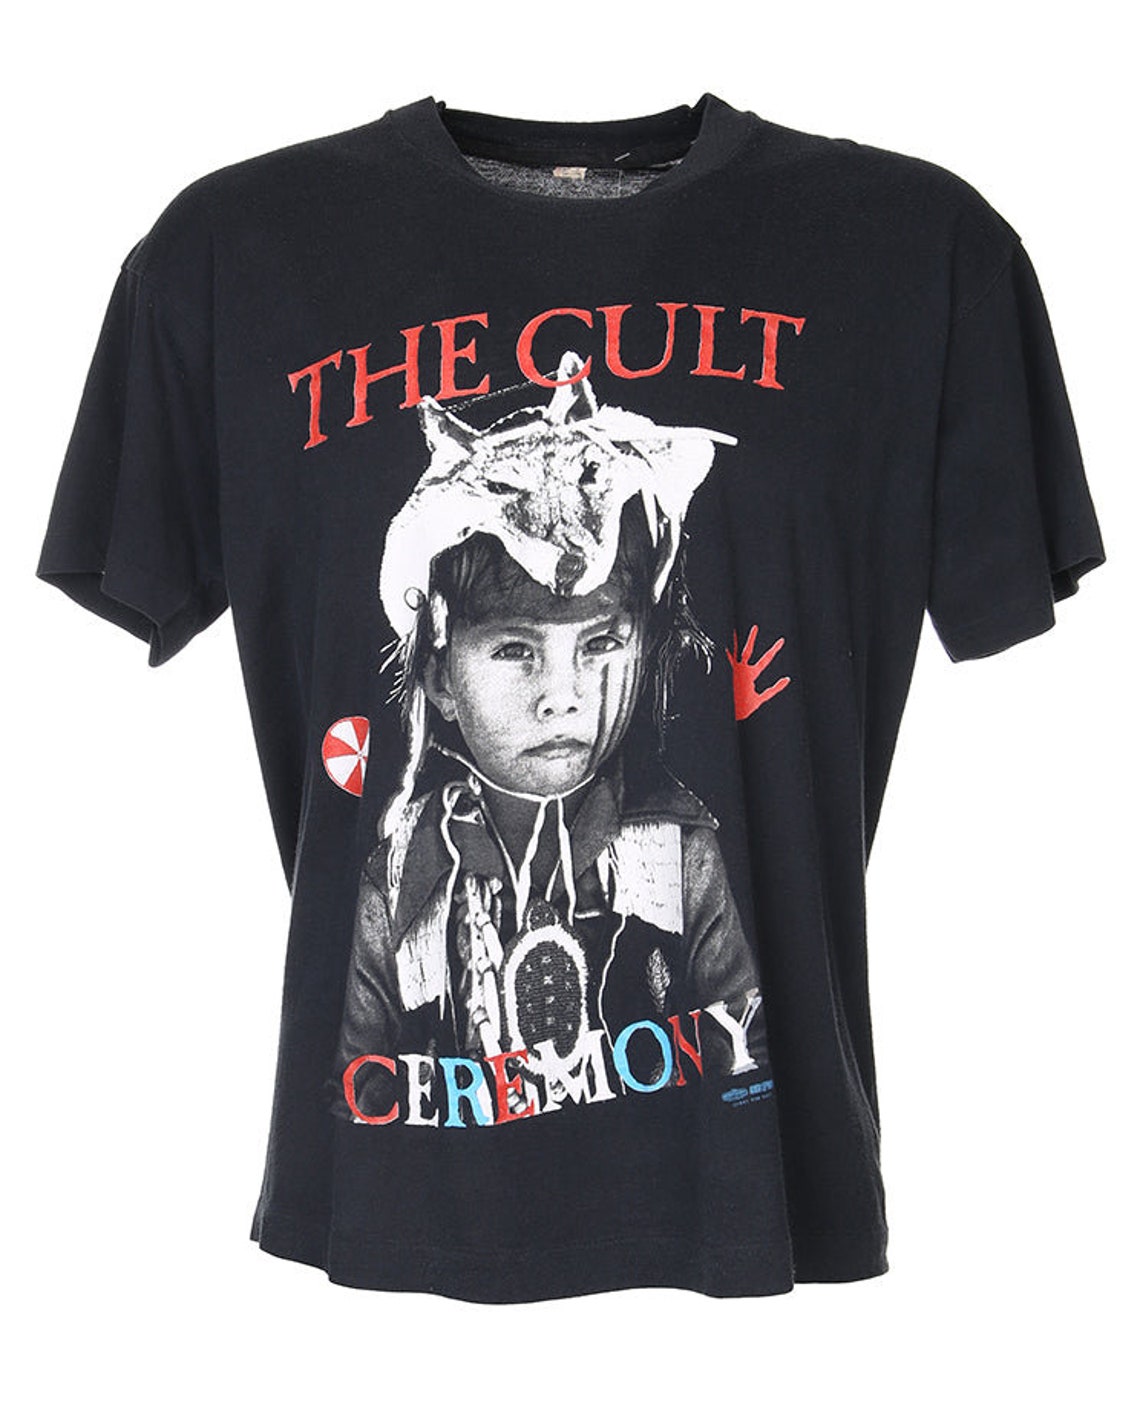 The Cult 1991 Ceremonial Stomp Tour T-shirt M - Etsy